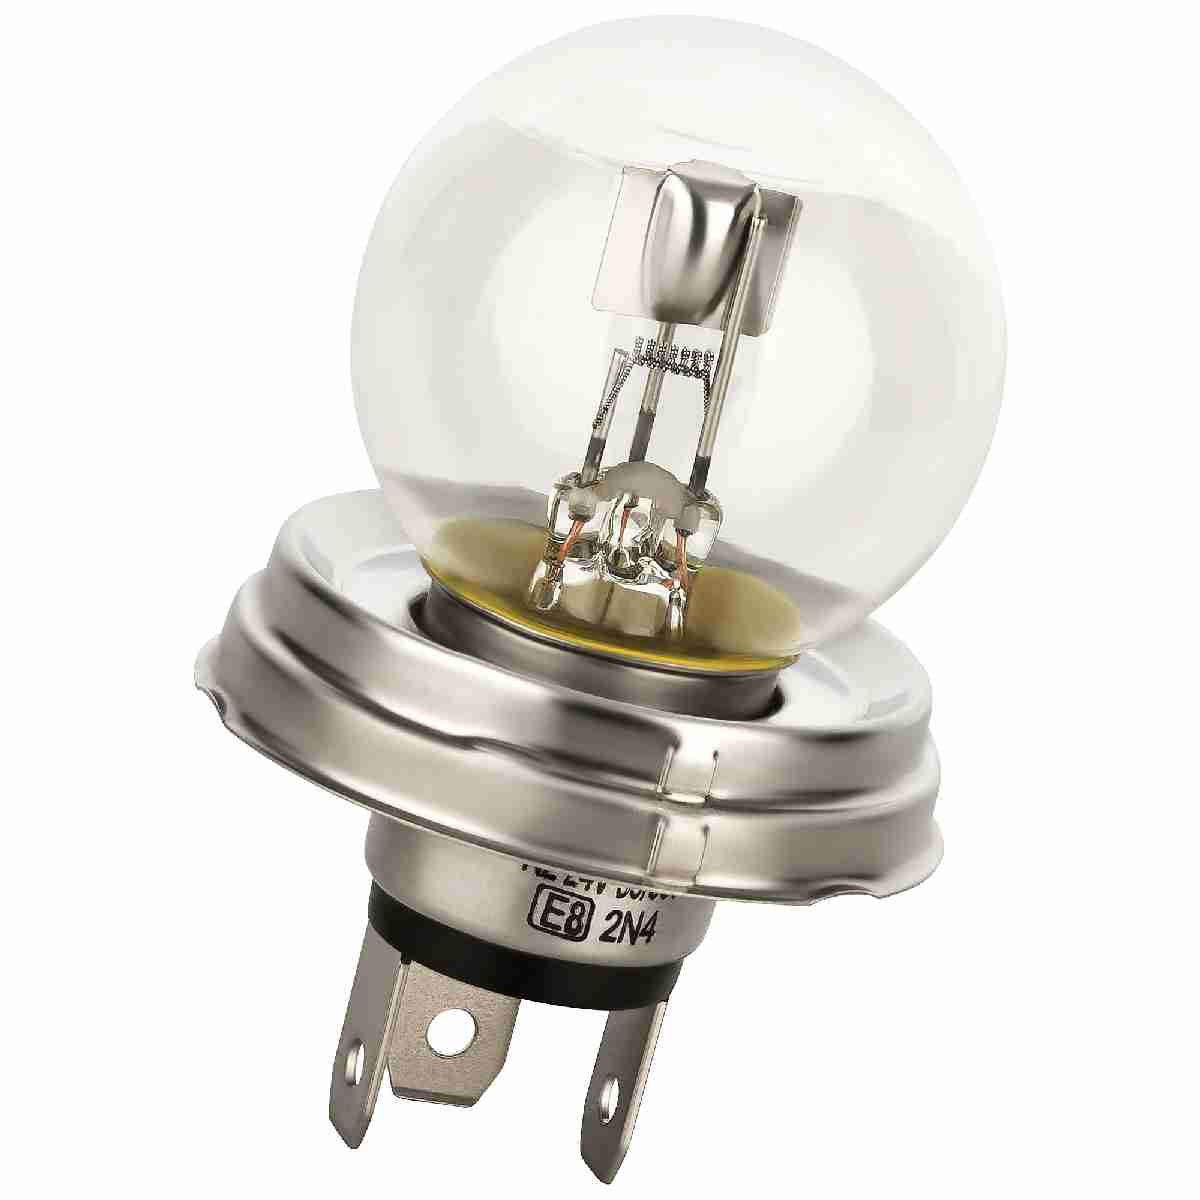 Auto-Lampen-Discount - H7 Lampen und mehr günstig kaufen - 10x